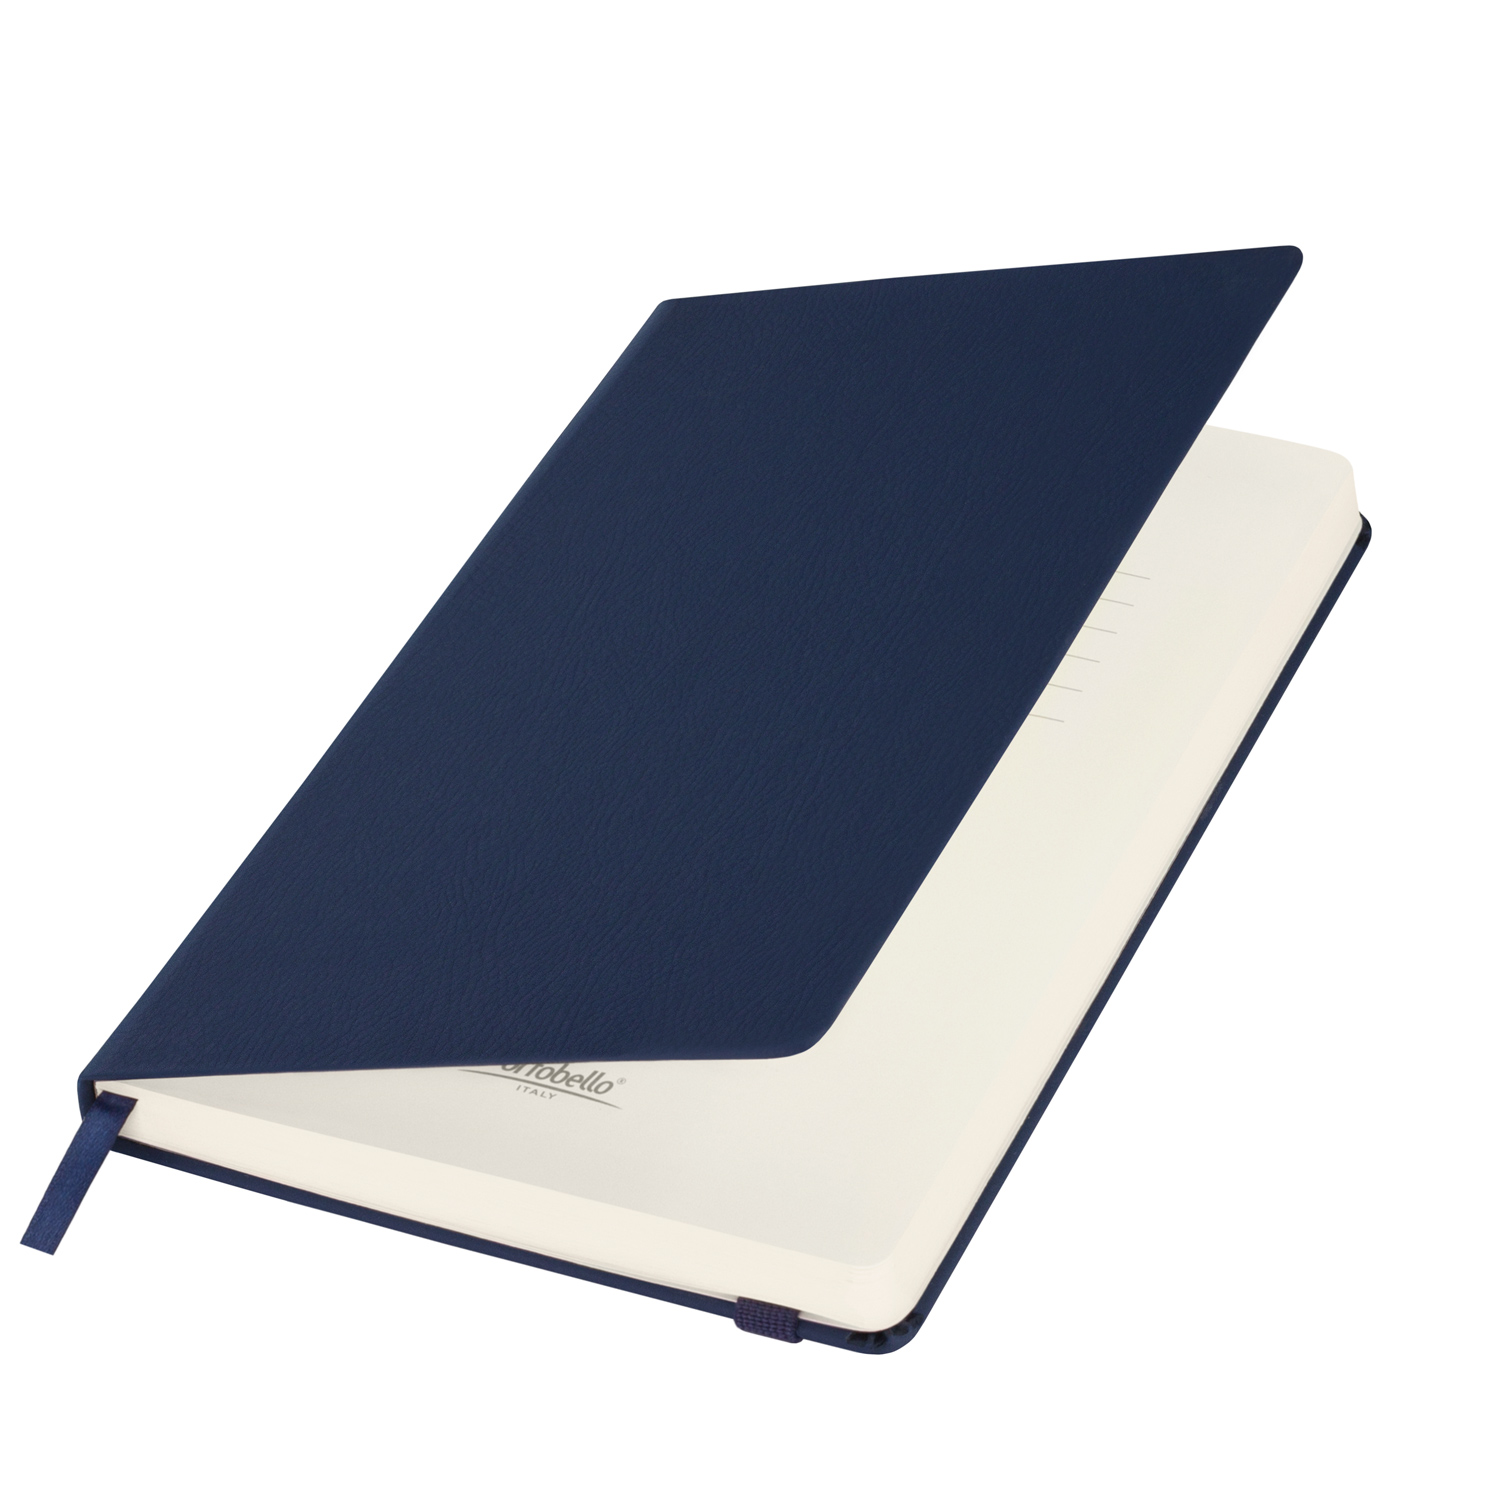 Ежедневник недатированный Marseille soft touch BtoBook, черный (без упаковки, без стикера)